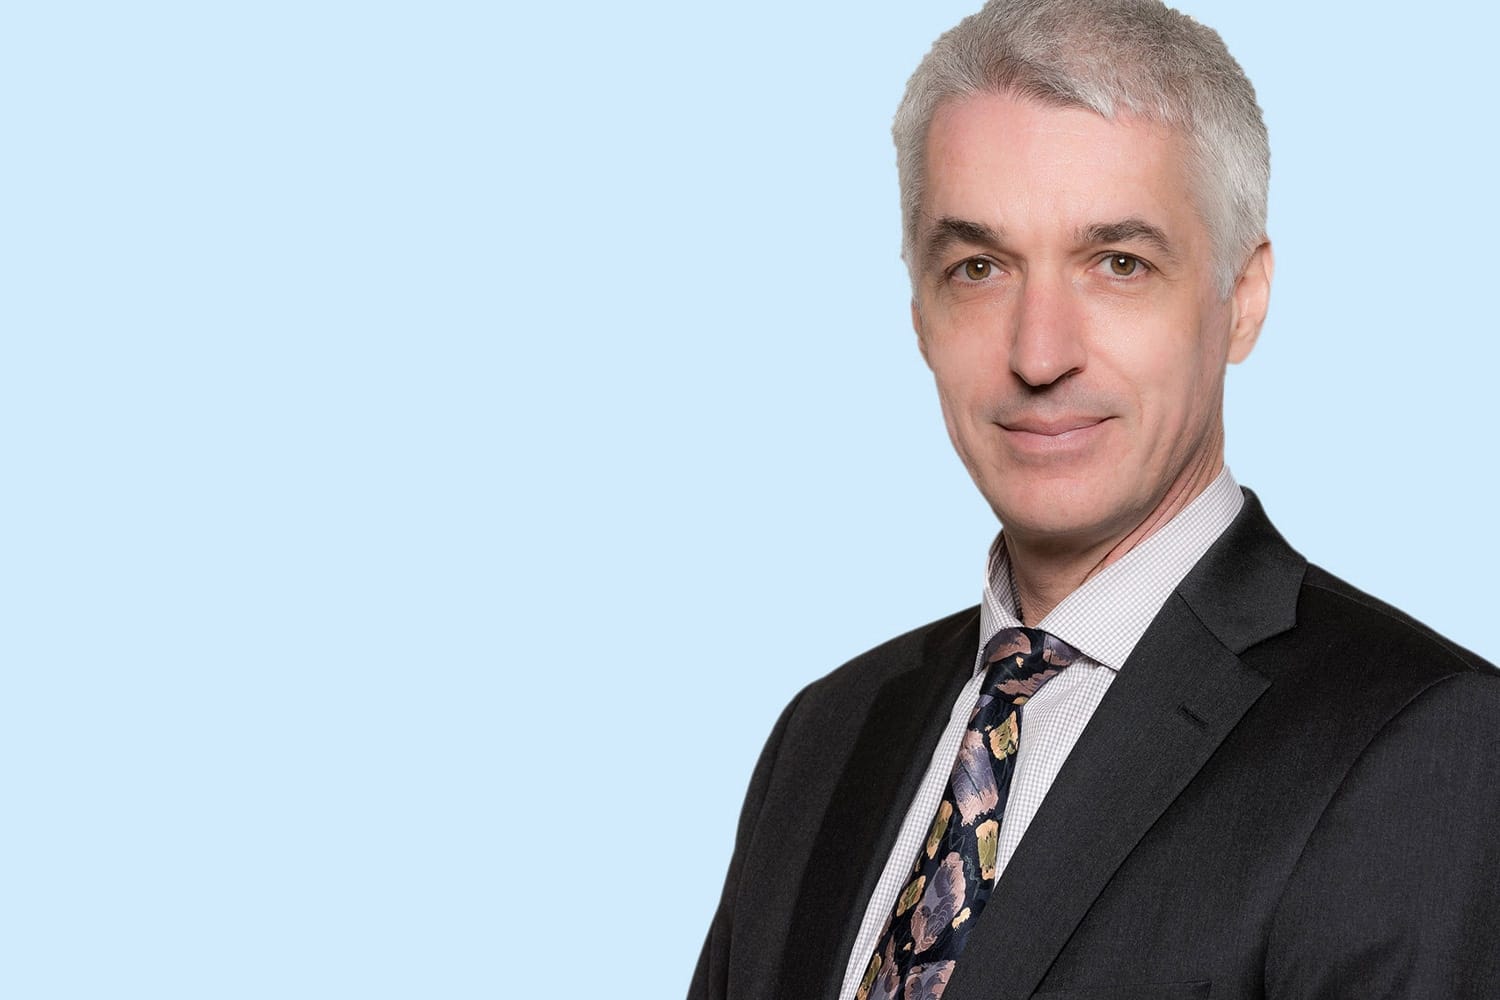 Peter Andrich, bisher CEO bei Koenig & Bauer (IT), übernimmt von Luigi Magliocchi die zusätzliche Funktion des CEO bei Koenig & Bauer Flexotecnica.